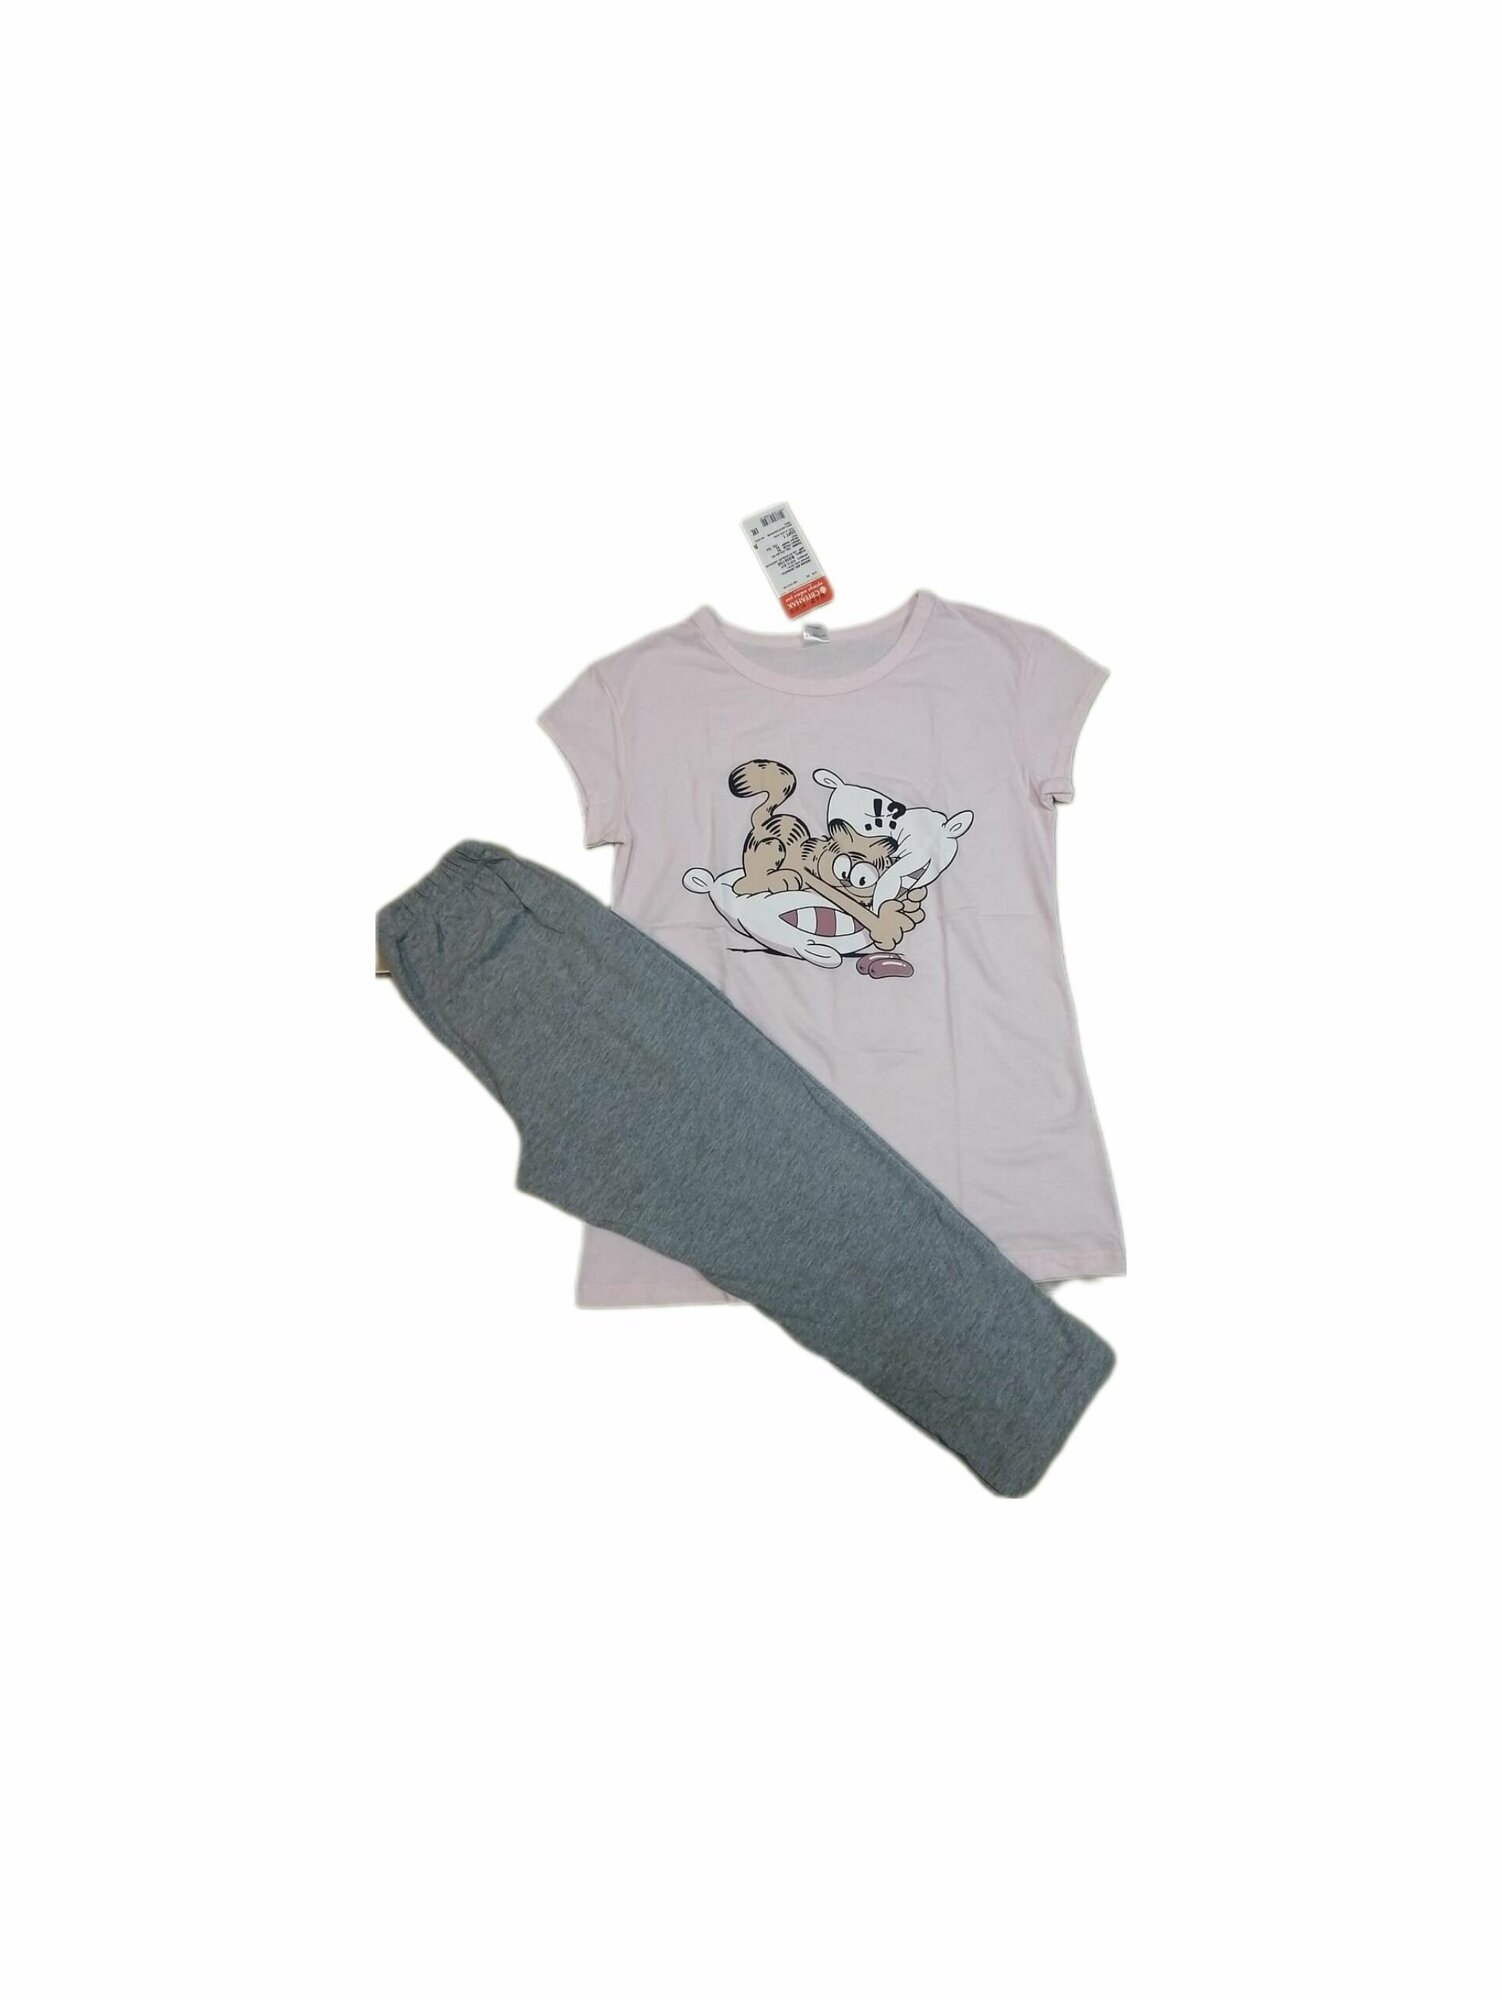 Пижама Свiтанак, бриджи, футболка, короткий рукав, трикотажная, пояс на резинке, размер 92, серый, розовый - фотография № 8